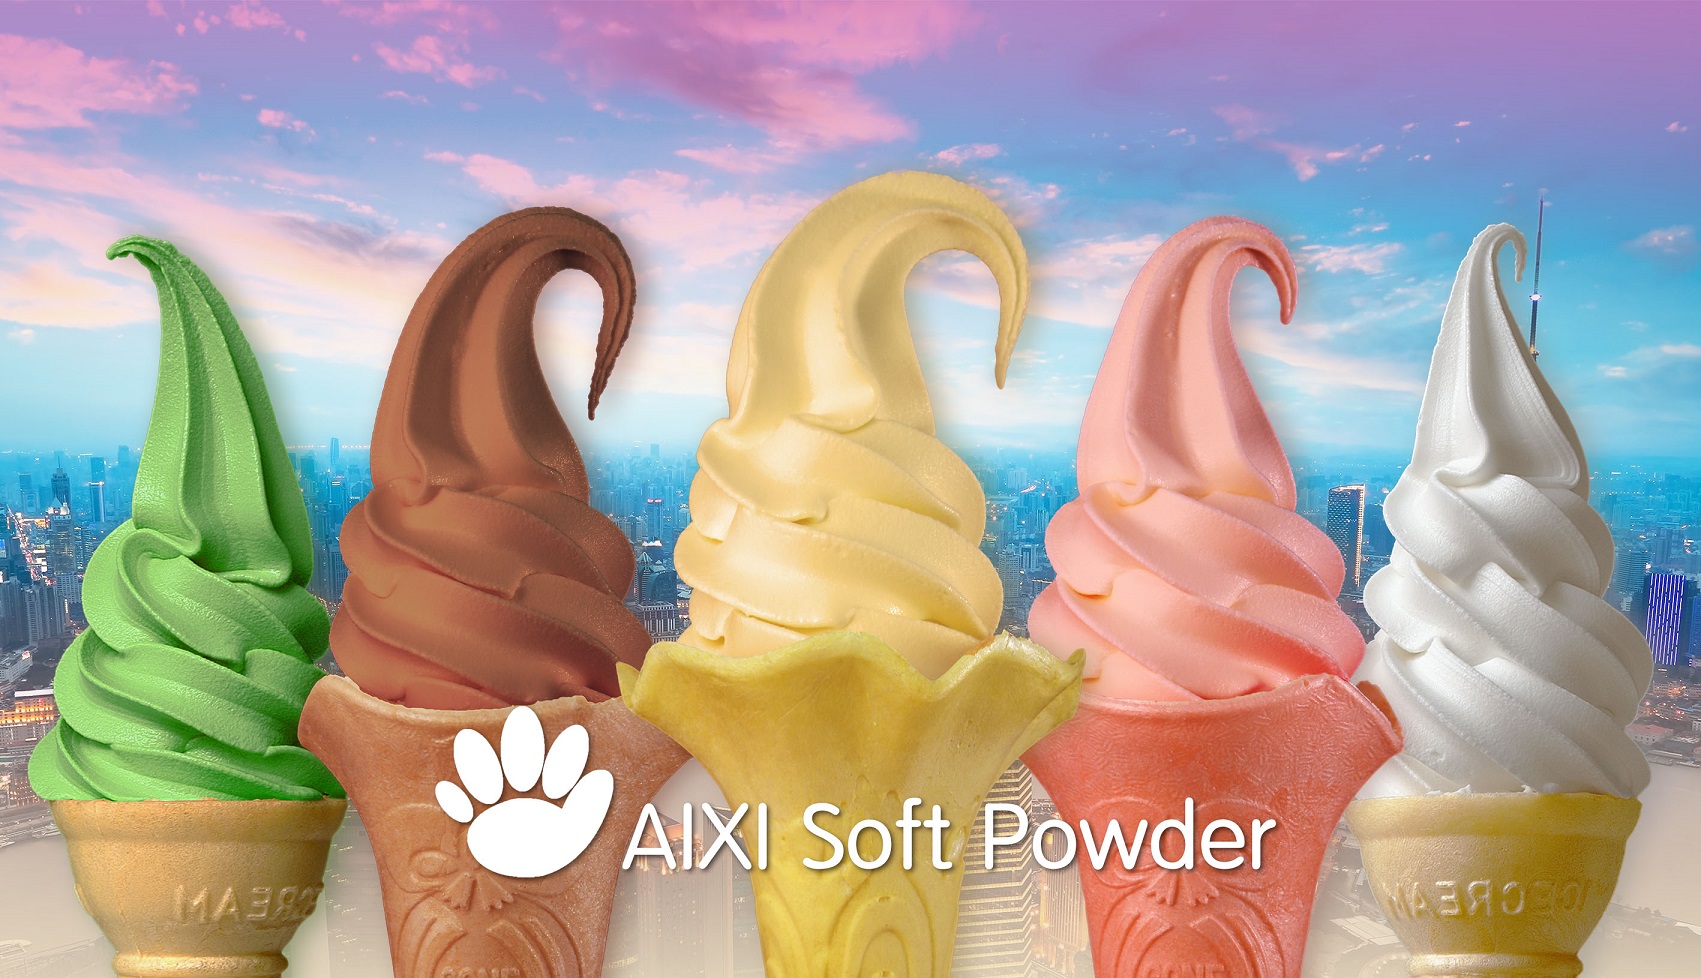 AIXI Soft Powder